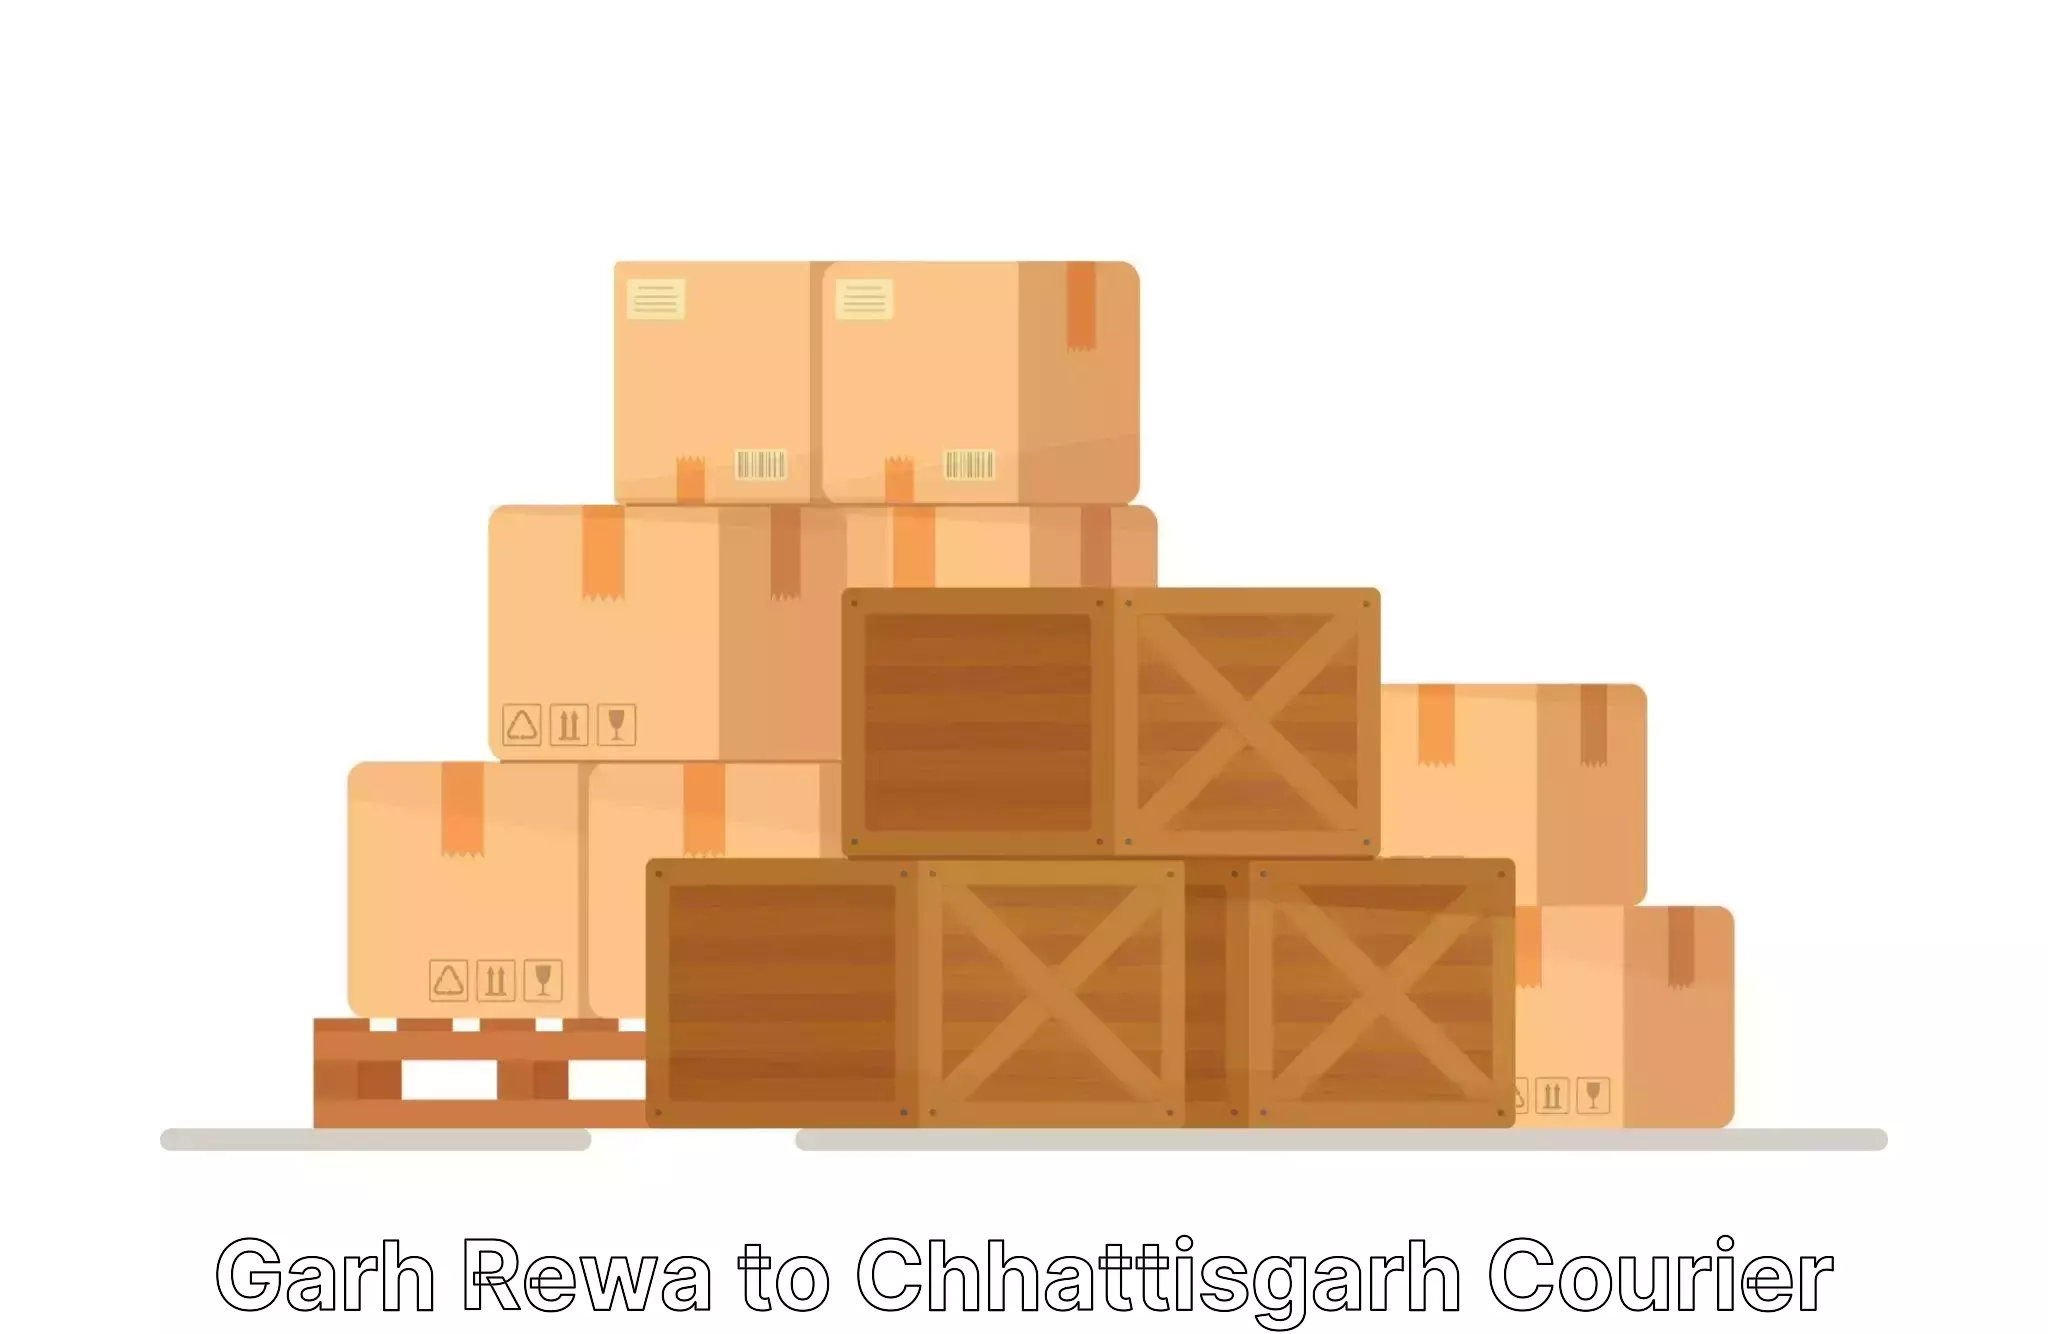 Advanced relocation solutions Garh Rewa to Patna Chhattisgarh